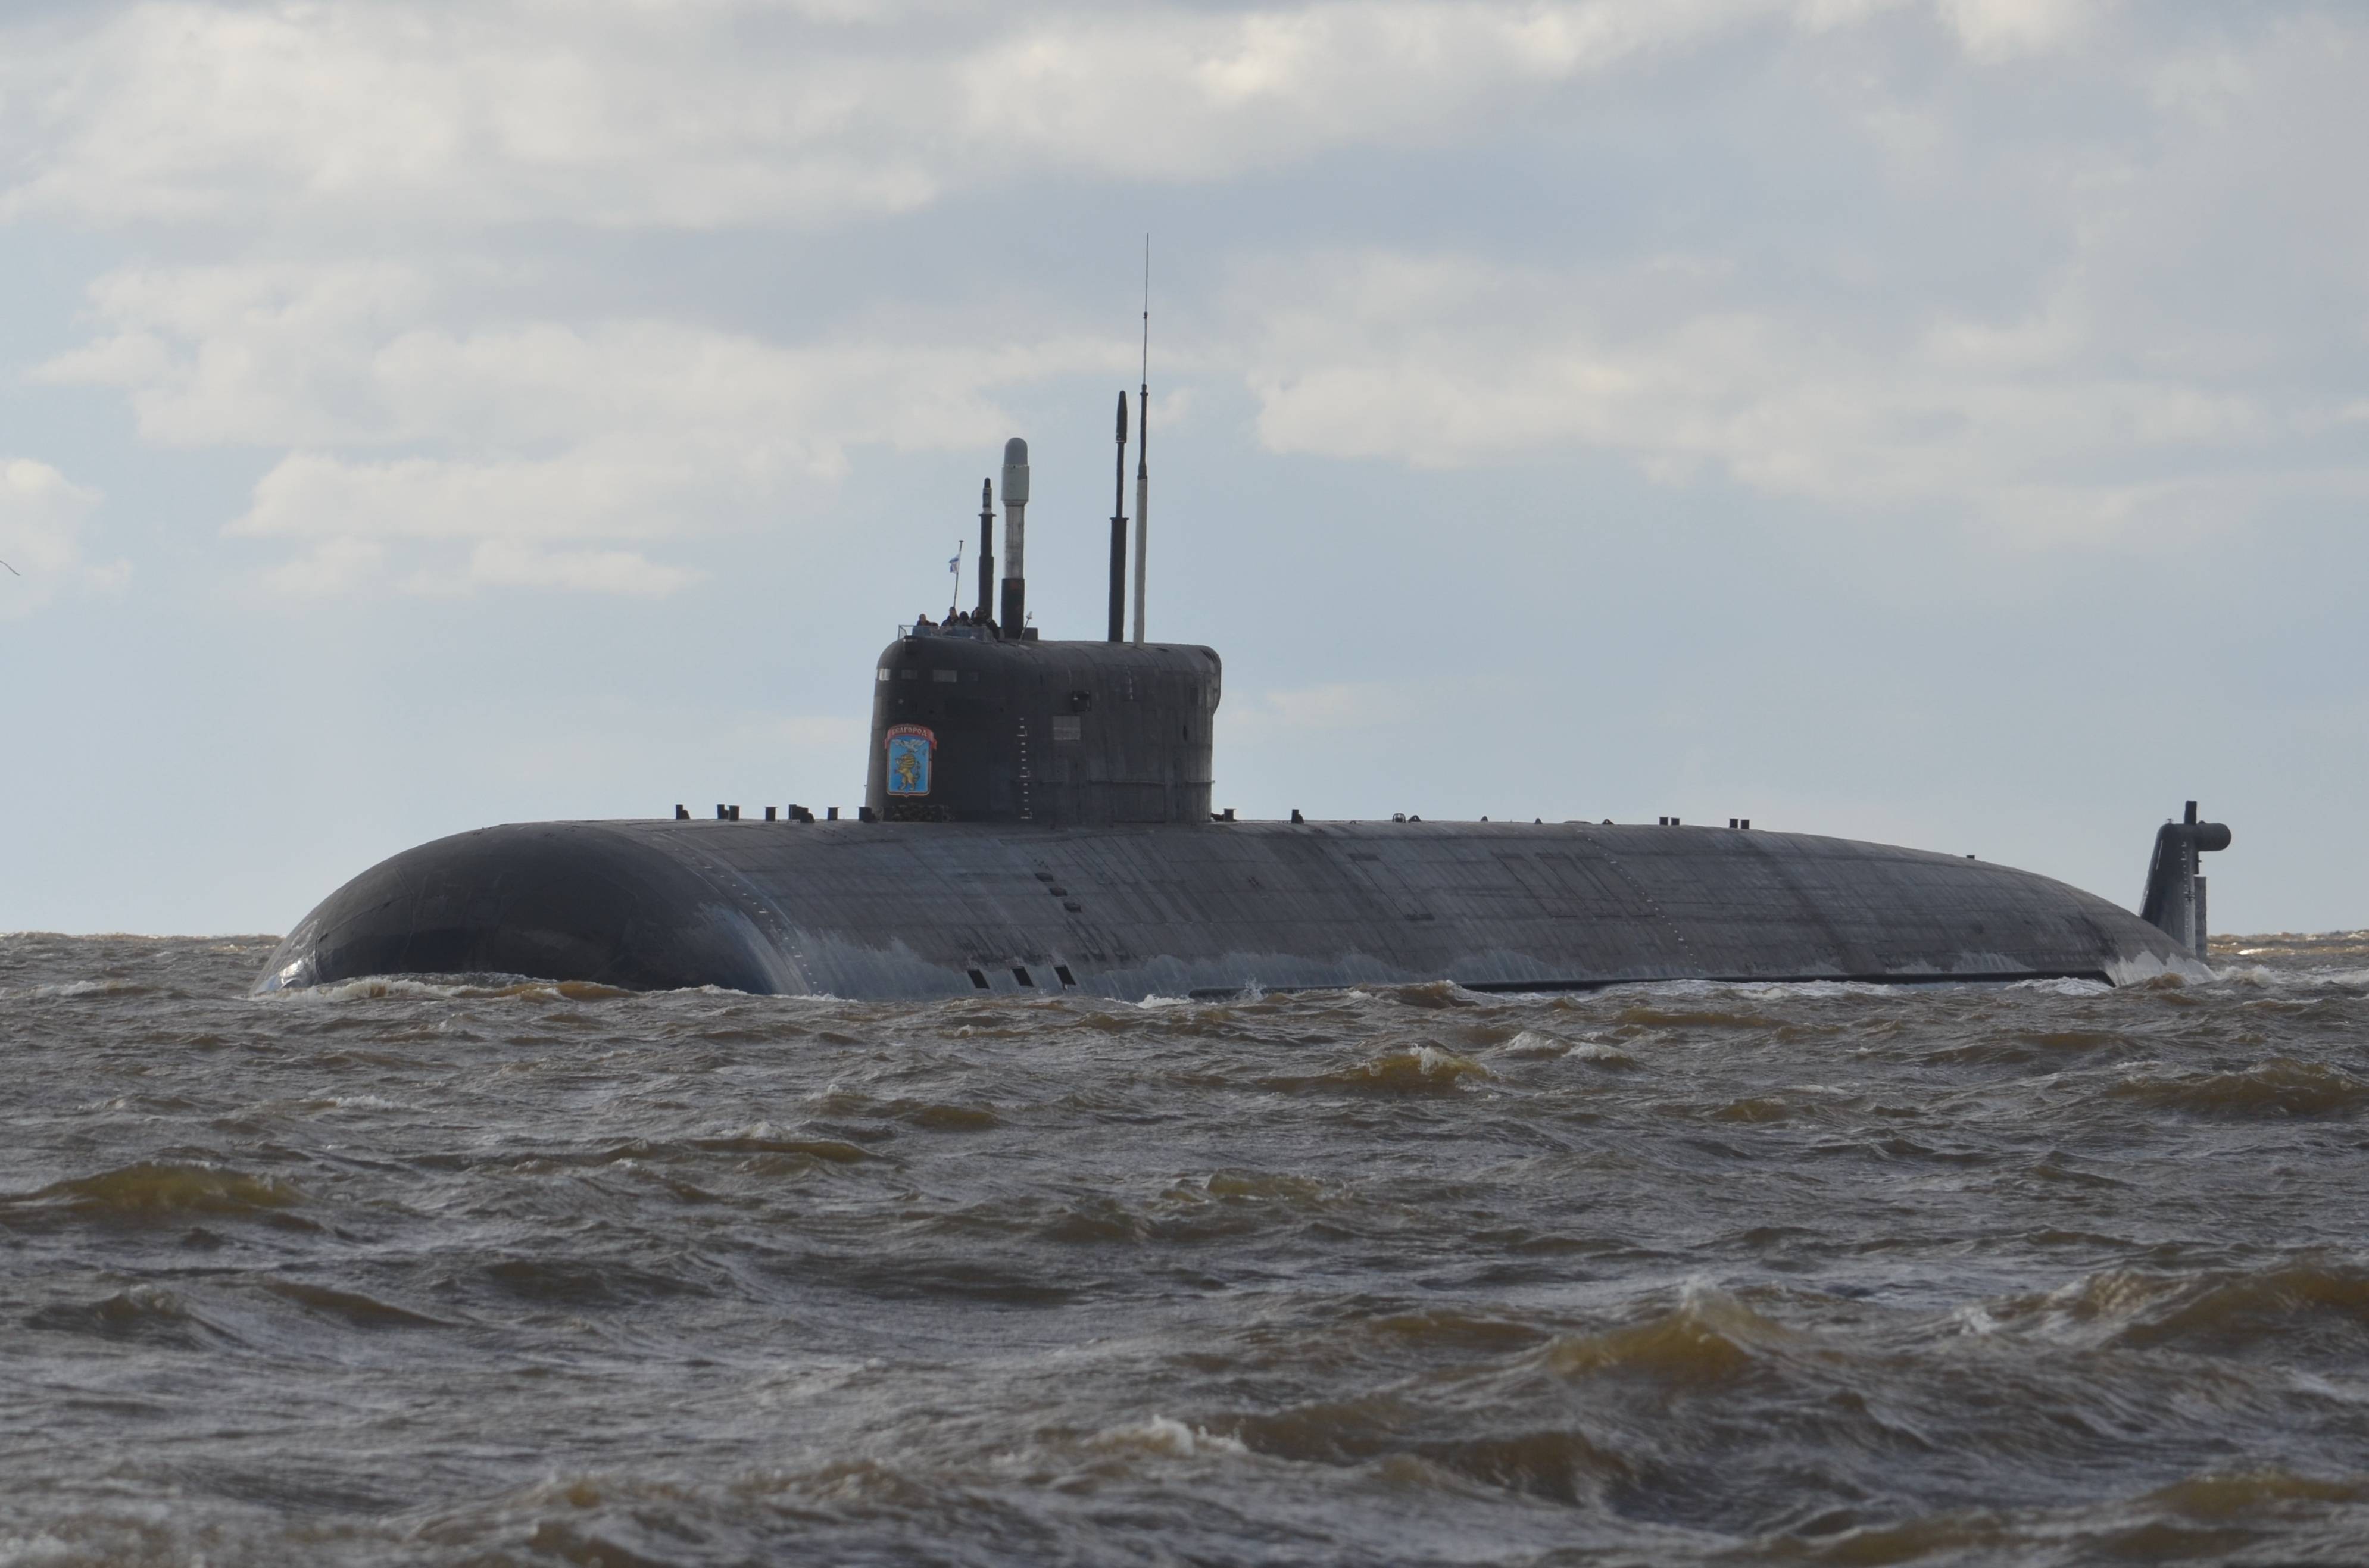 原创俄罗斯装备志别尔哥罗德号特种核潜艇